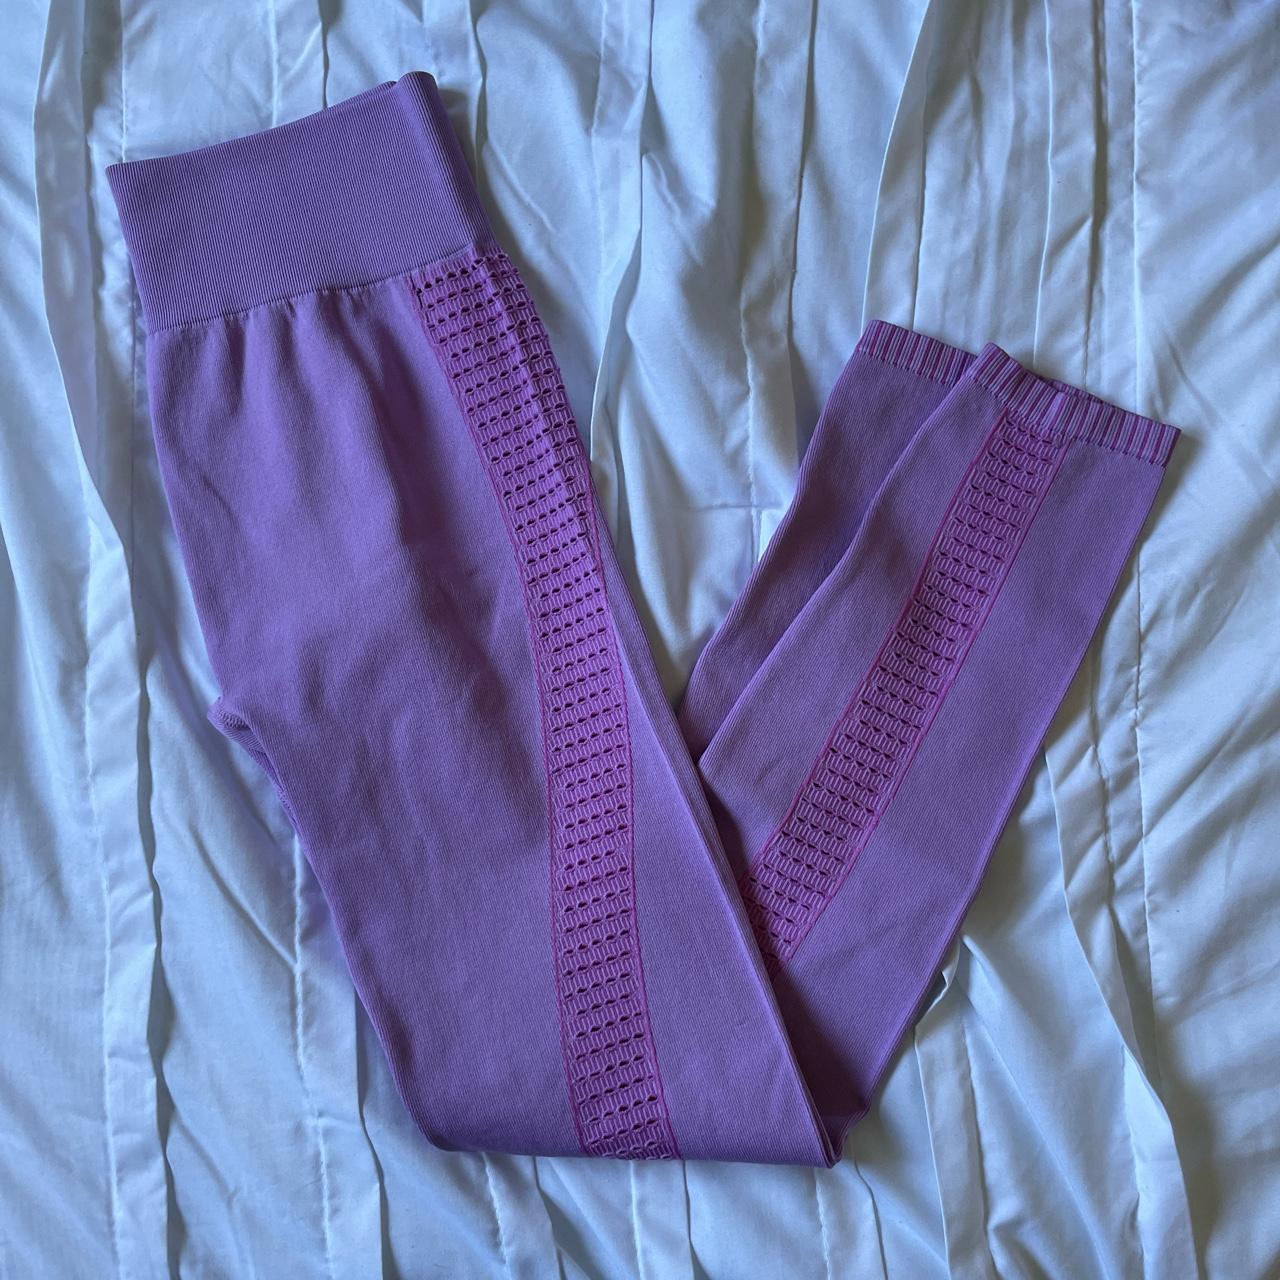 Nike pro hypercool pink leggings in size S! Tight - Depop